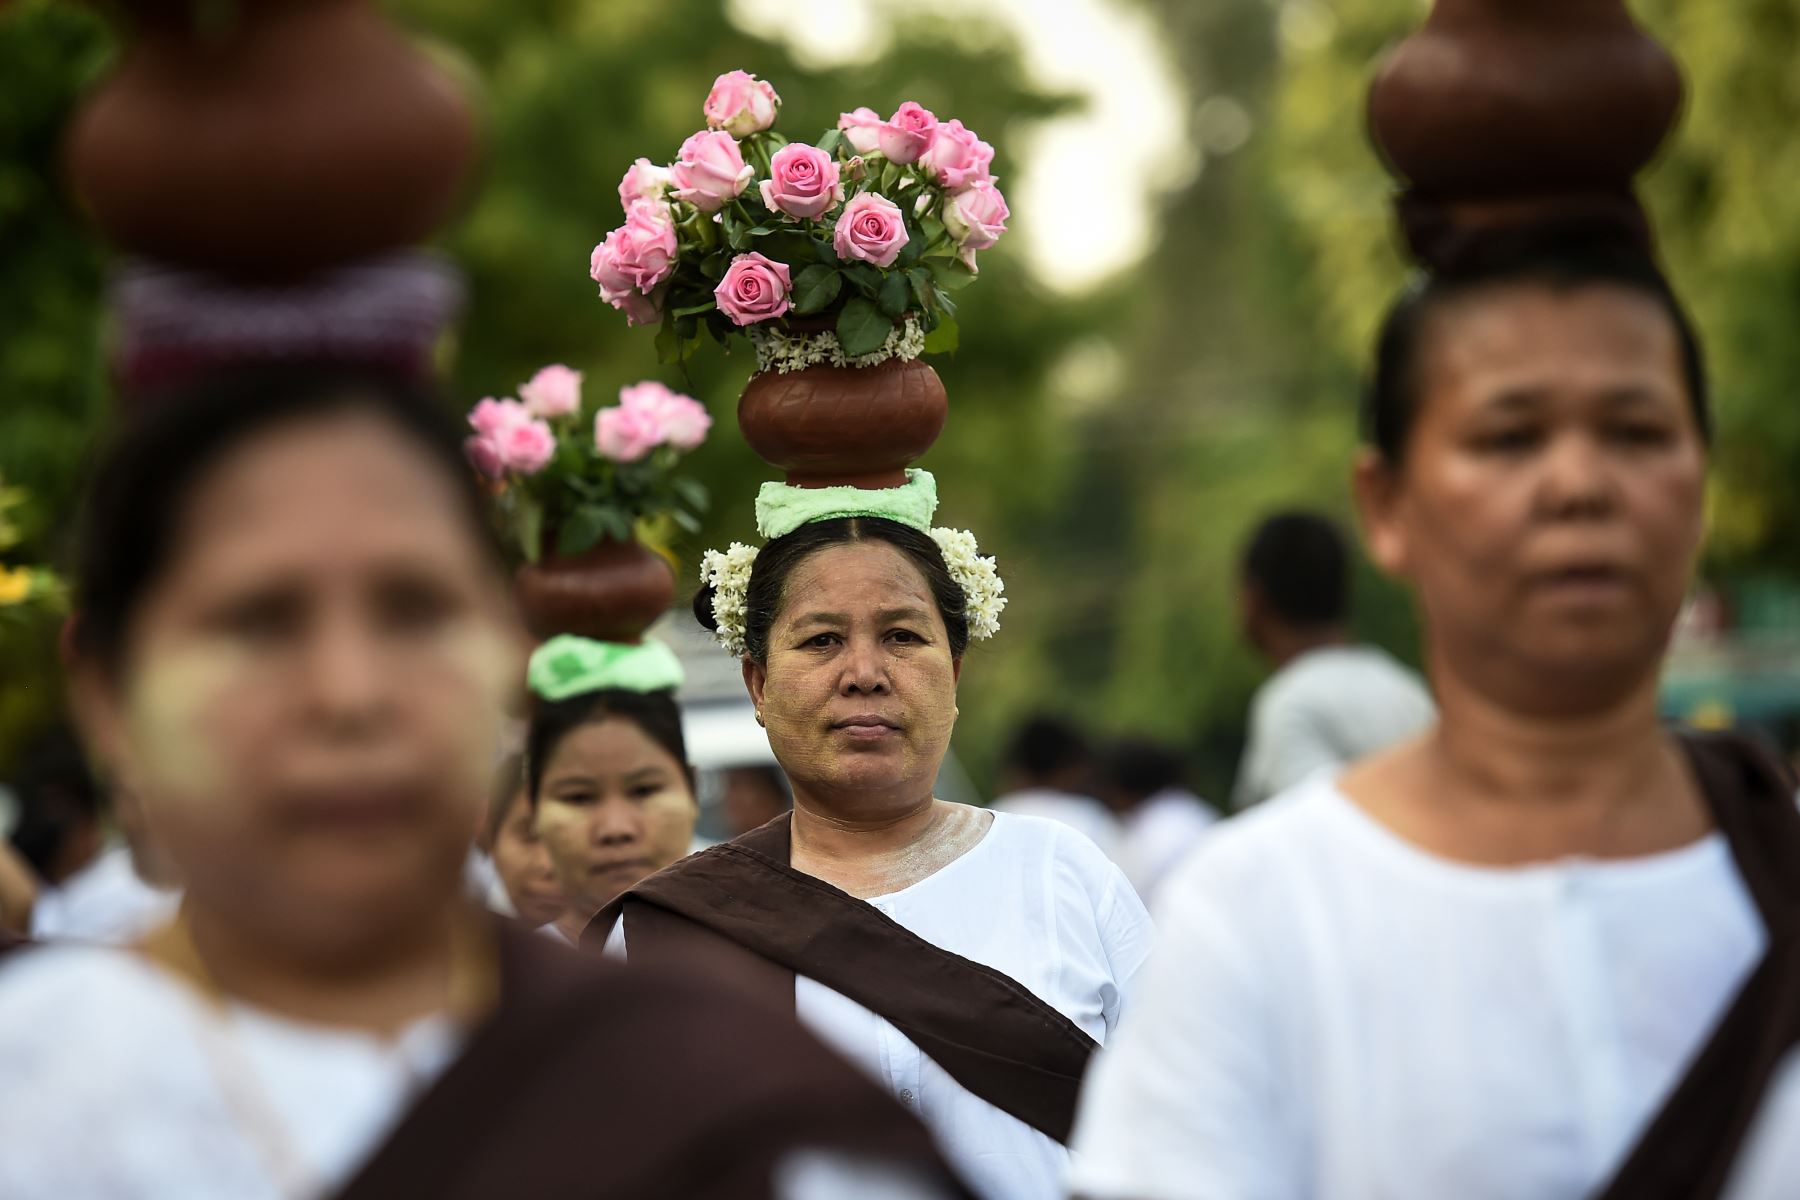 Los devotos budistas llevan agua y flores durante el cumpleaños de Buda en Mandalay.
 Los budistas conmemoran el nacimiento de Buda, alcanzando la iluminación y la muerte el día de la luna llena.
Foto:AFP